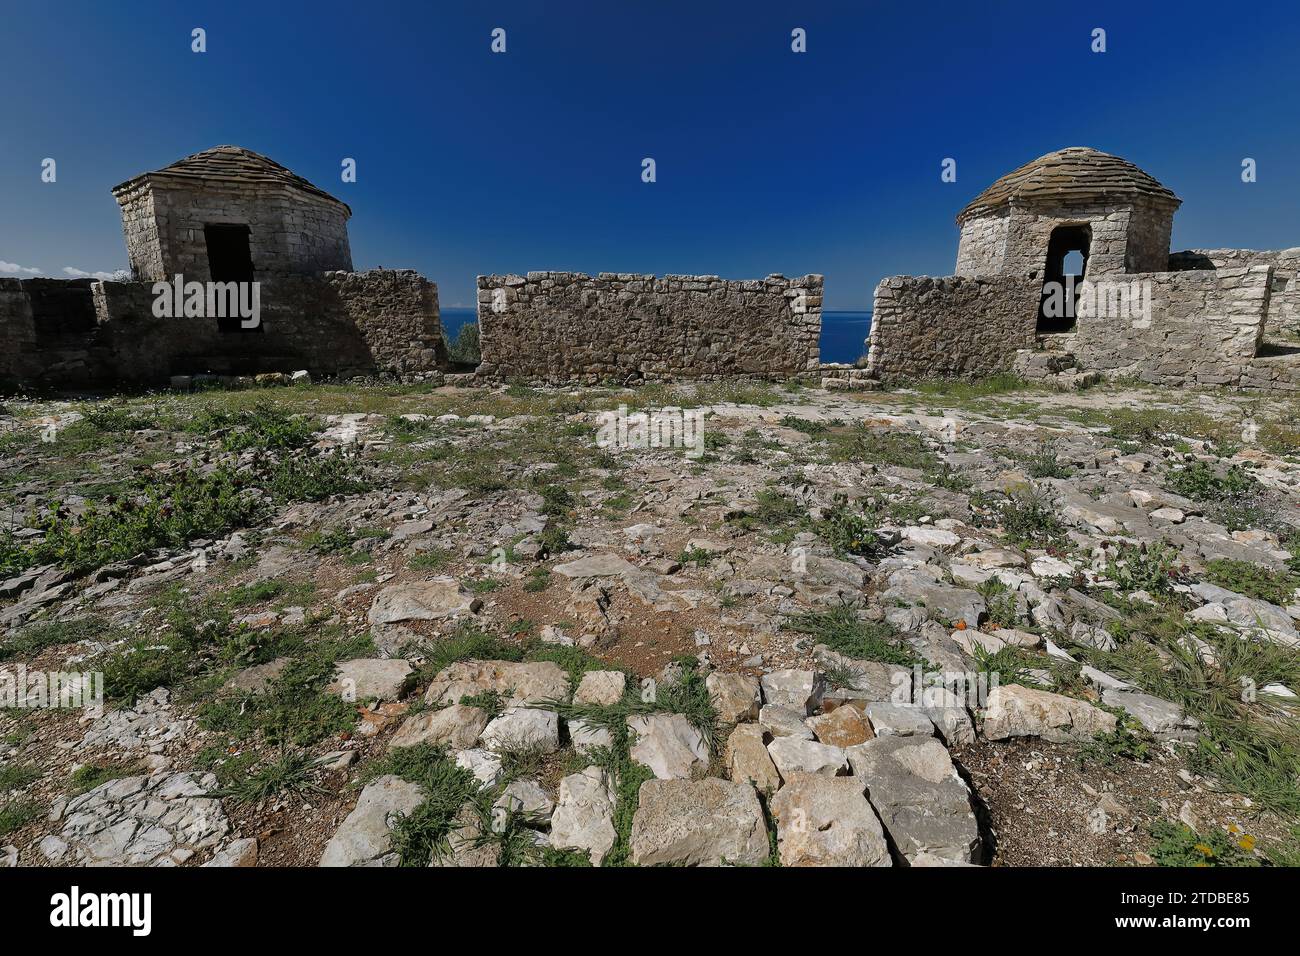 138 torri di controllo, castello di Ali Pasha terrazza inferiore, isola nella baia di Porto Palermo collegata alla terraferma da una striscia di terra. Himare-Albania. Foto Stock